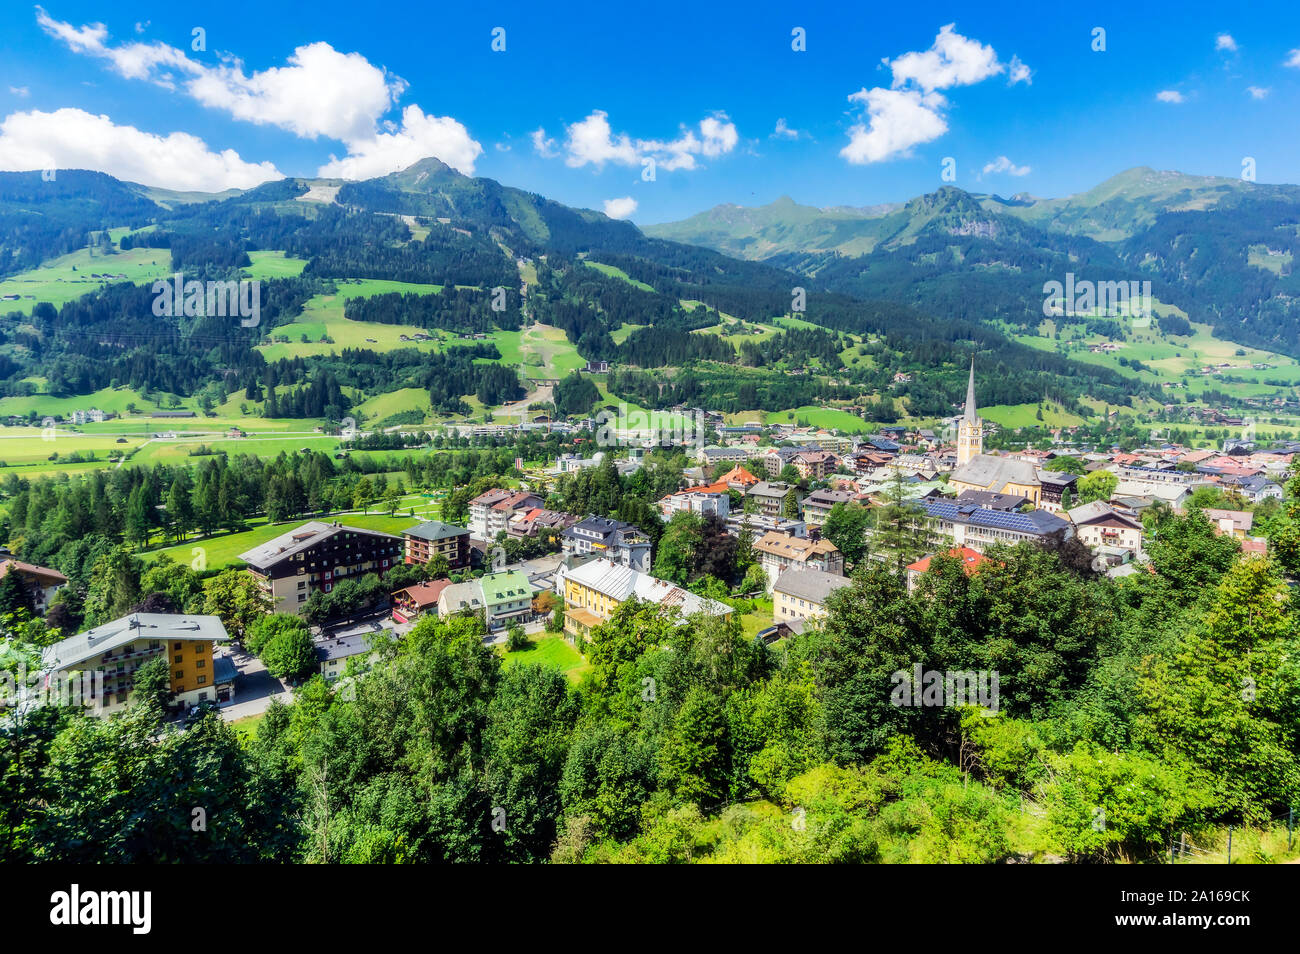 Austria, Salzburg State, Bad Hofgastein, village view Stock Photo